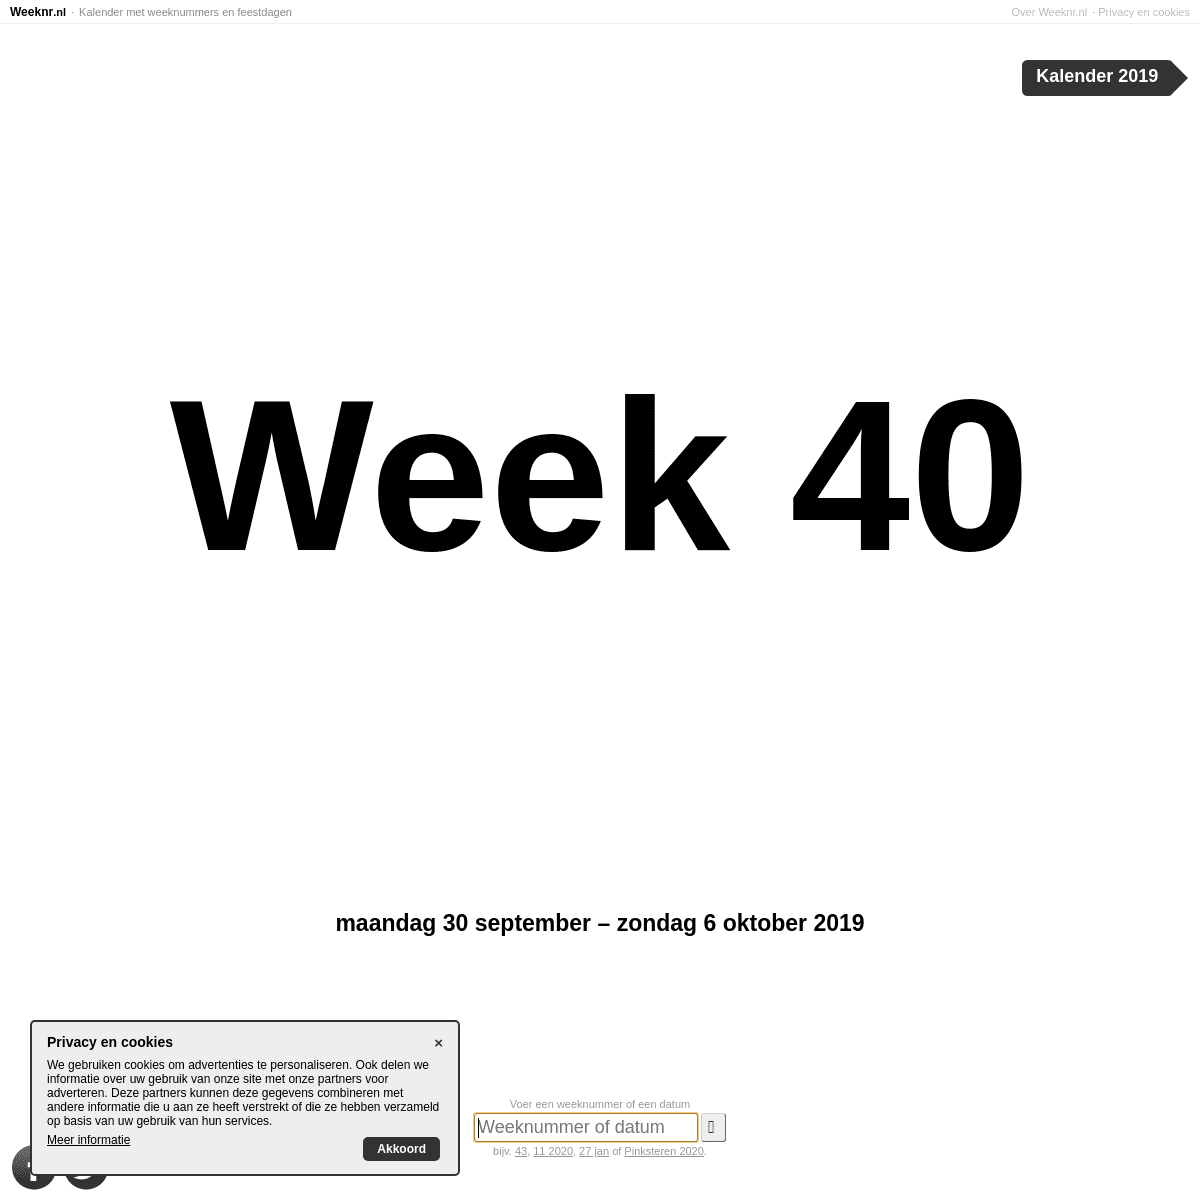 Weeknr.nl | Welke week is het?